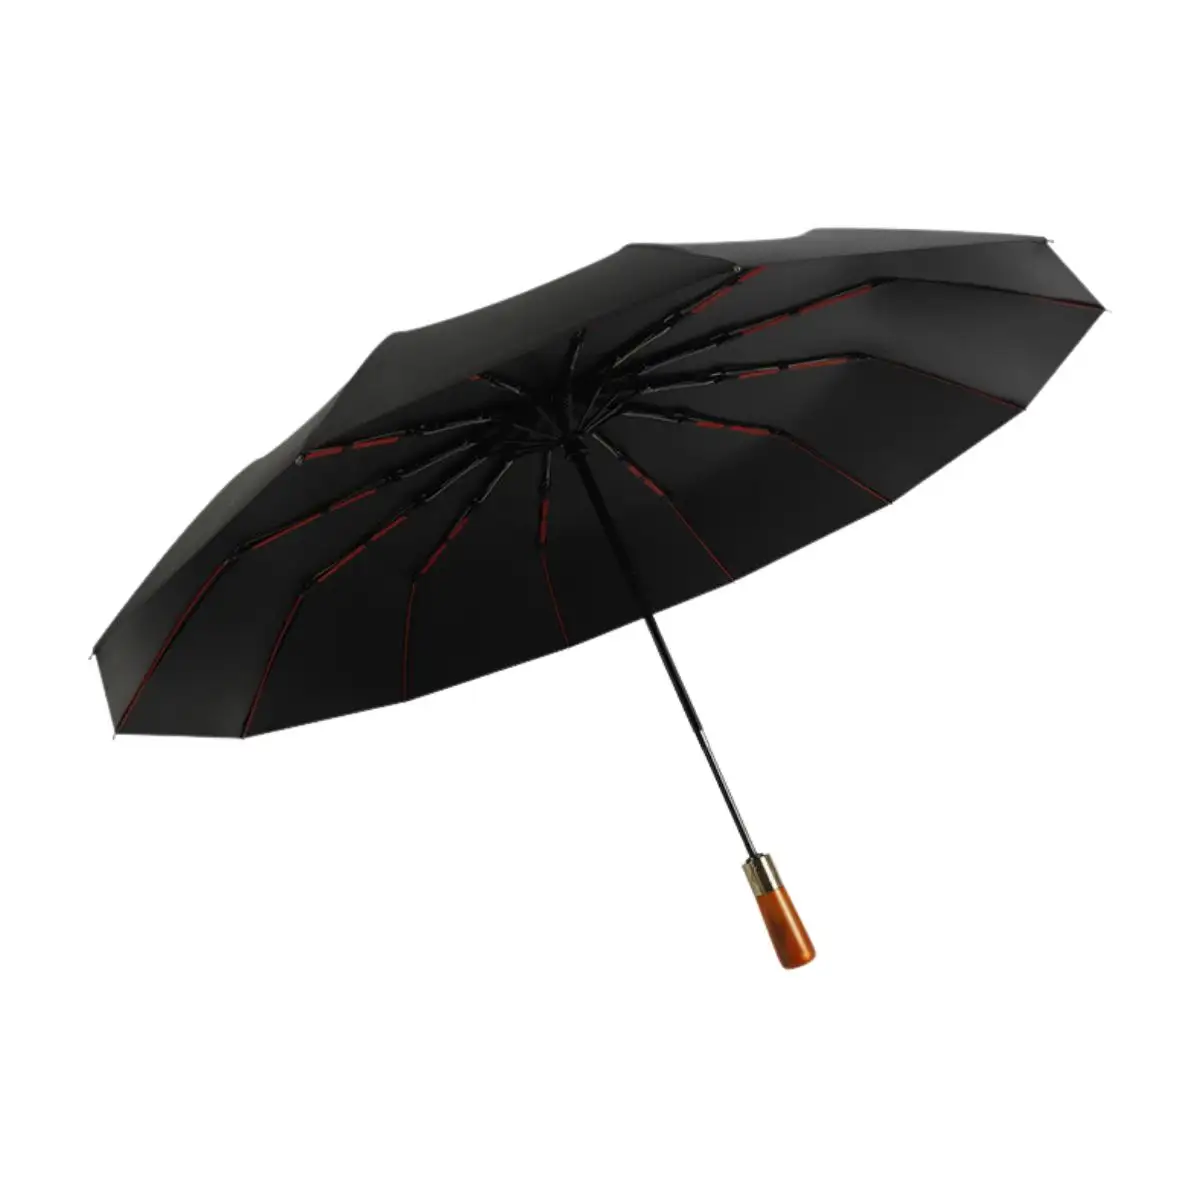 Commercio all'ingrosso 3 pieghevole maniglia di lusso grande pioggia ombrelli di lusso per la pioggia parasole sole personalizzato ombrello auto con logo